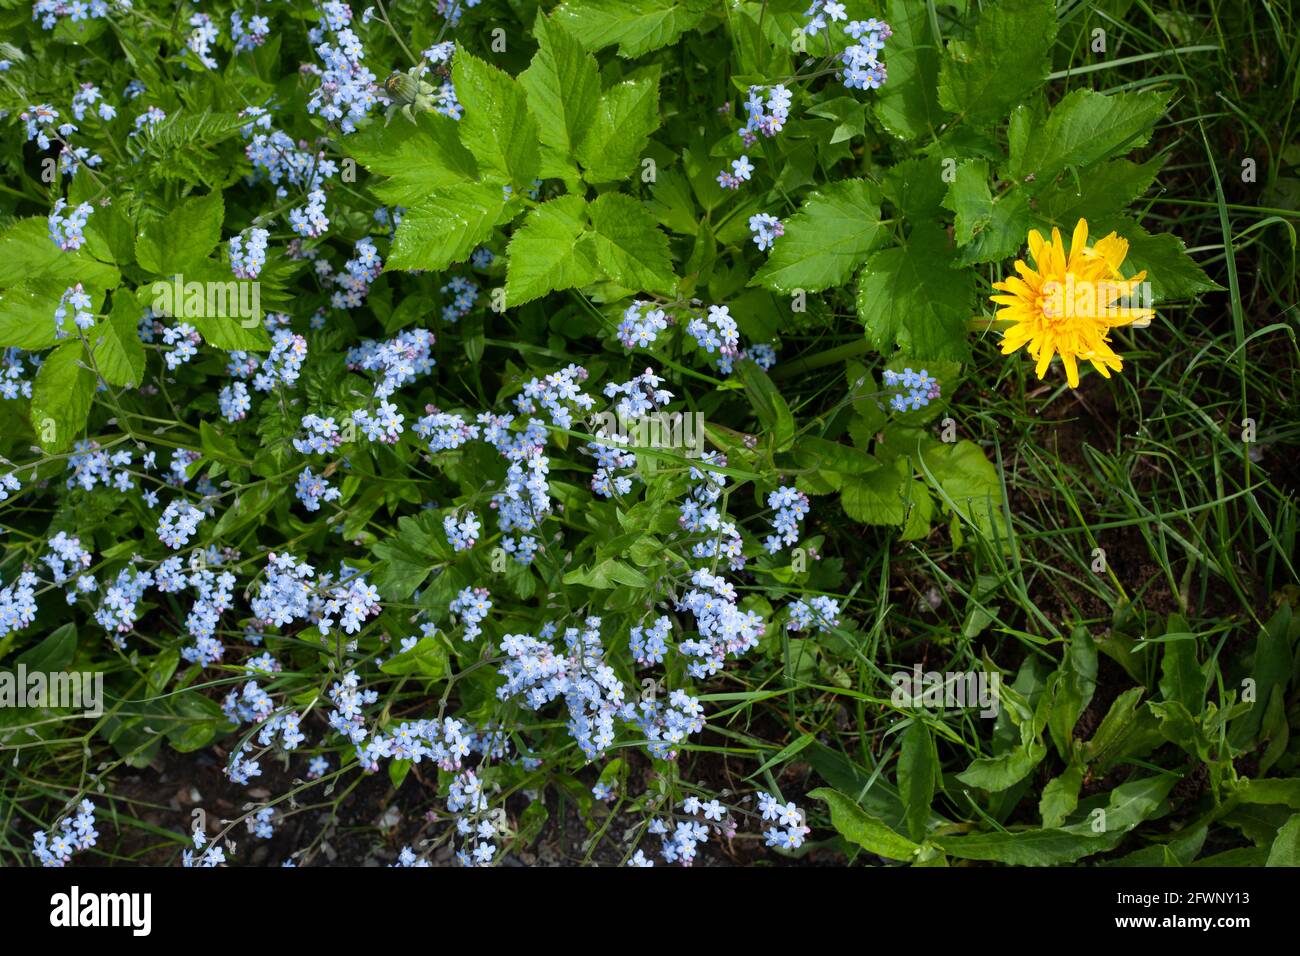 Ein gelber Dandelion und kleine blaue Blüten sind von grünen Gräsern umgeben Stockfoto